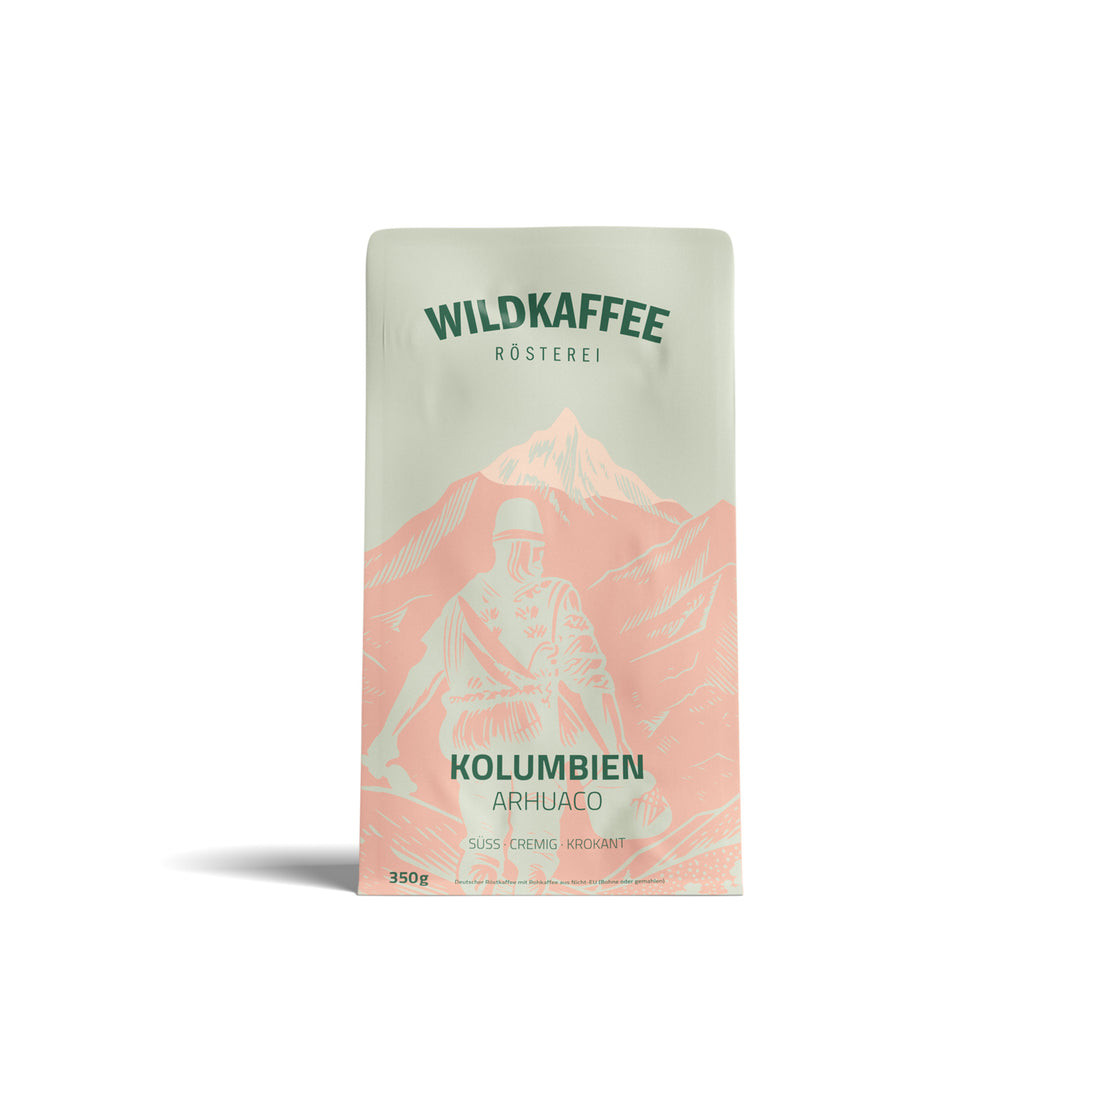 Kolumbien-Arhuaco-wildkaffee-rösterei